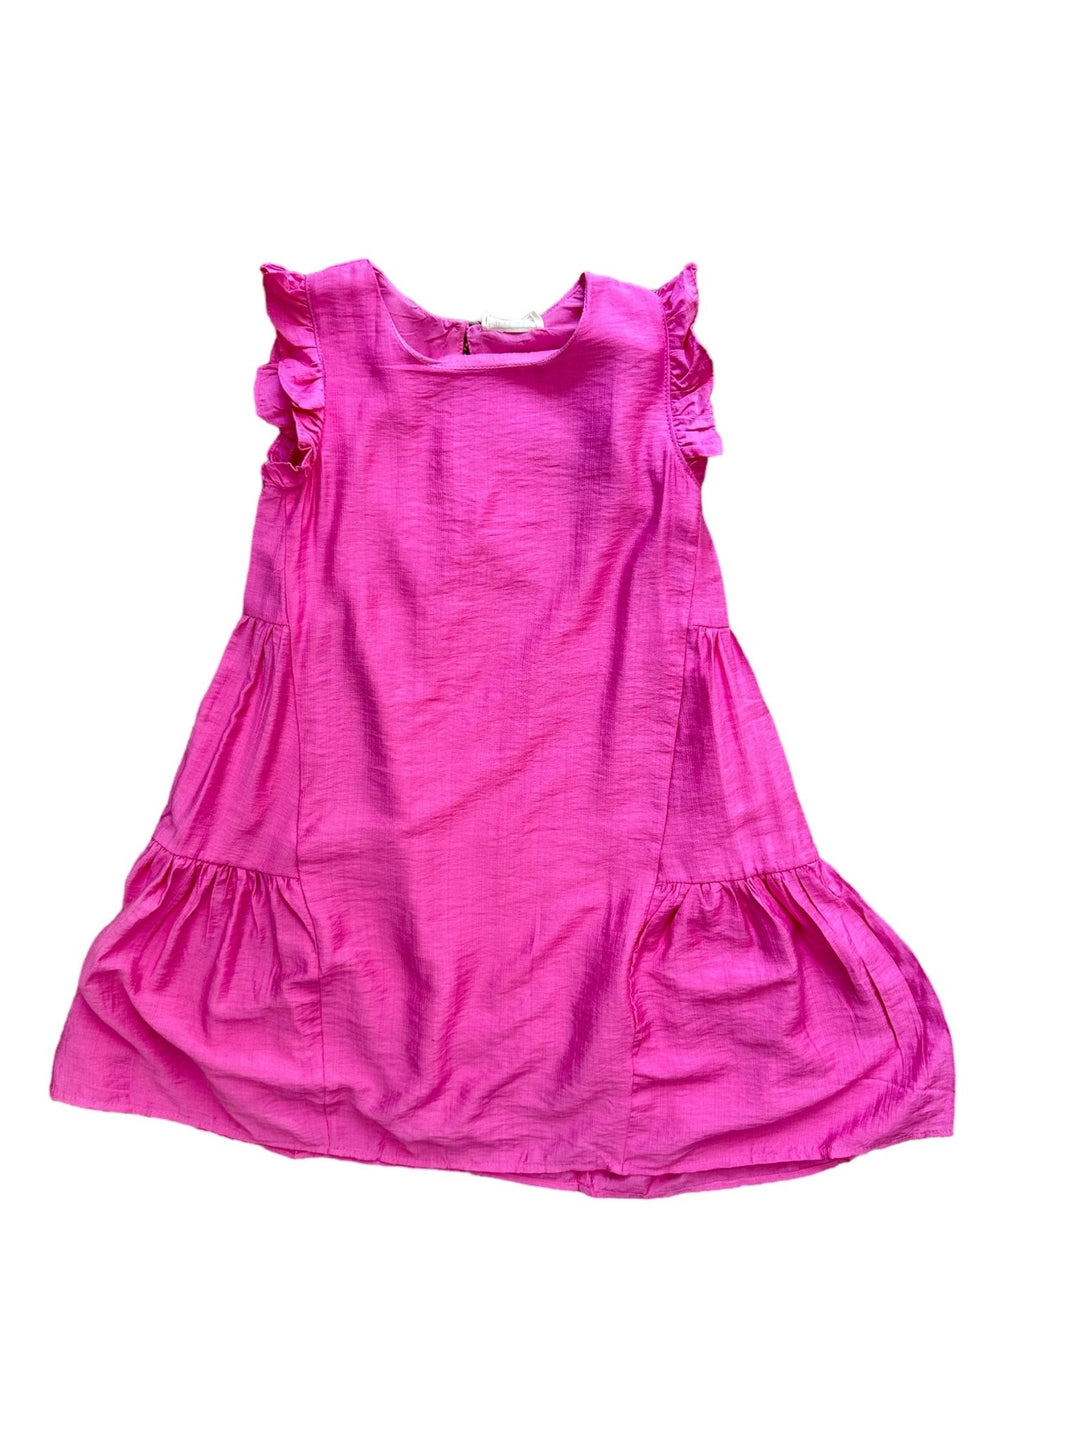 Hot Pink Flowy Dress - jernijacks